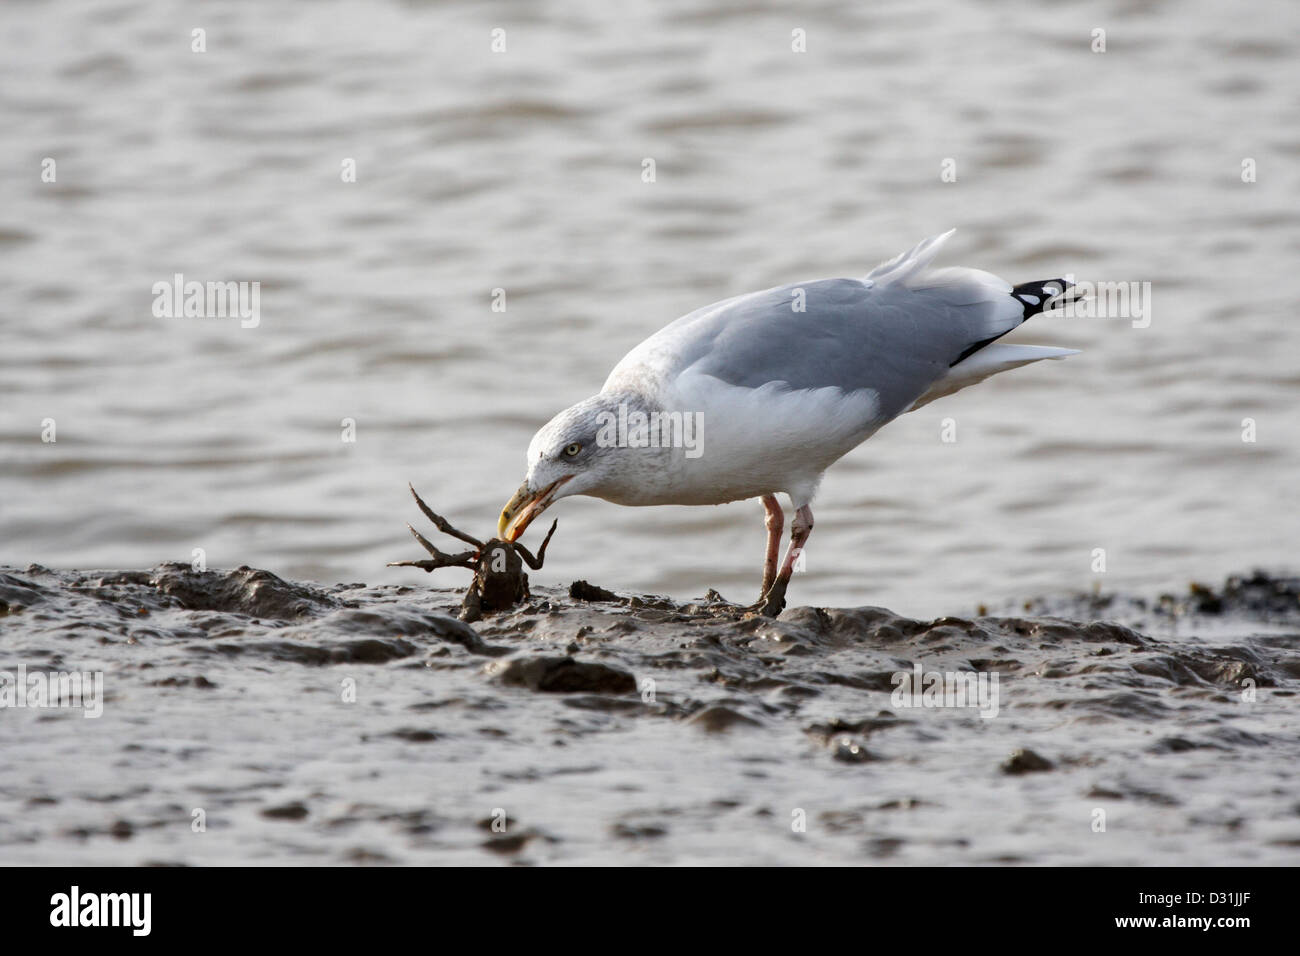 Herring Gull catching a crab Stock Photo